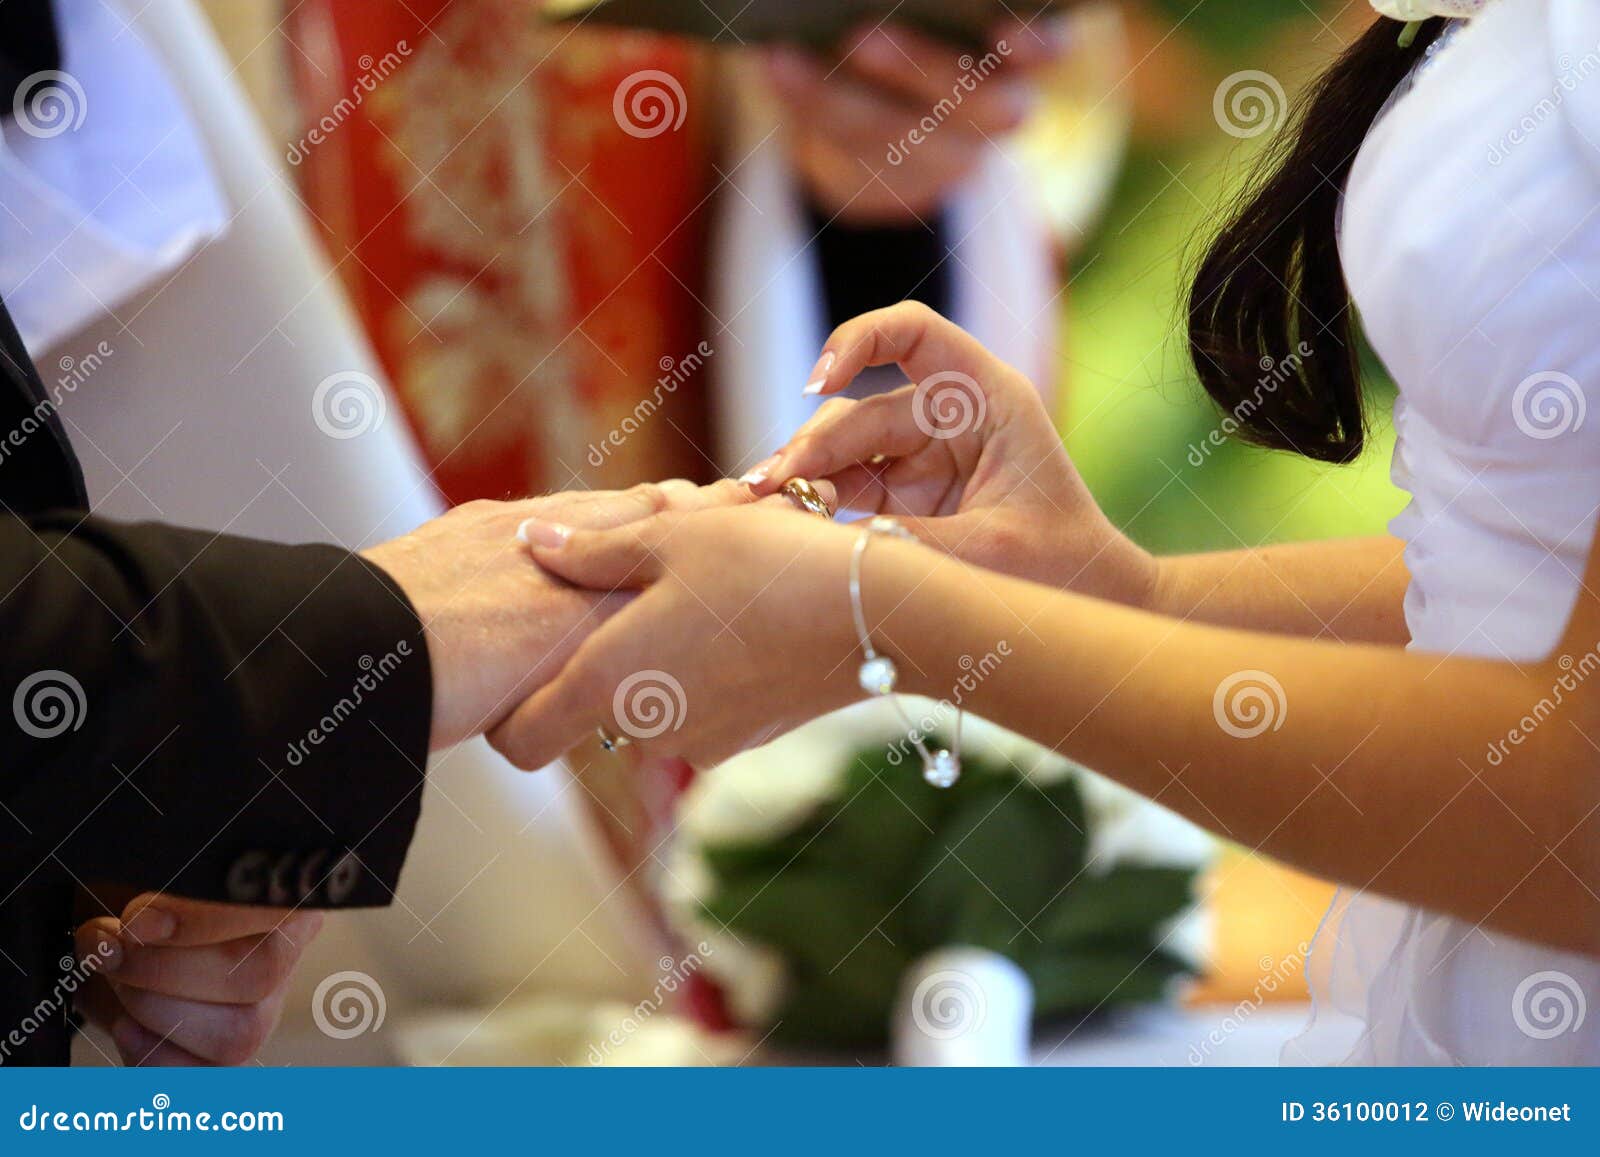 Catholic wedding ring ceremony